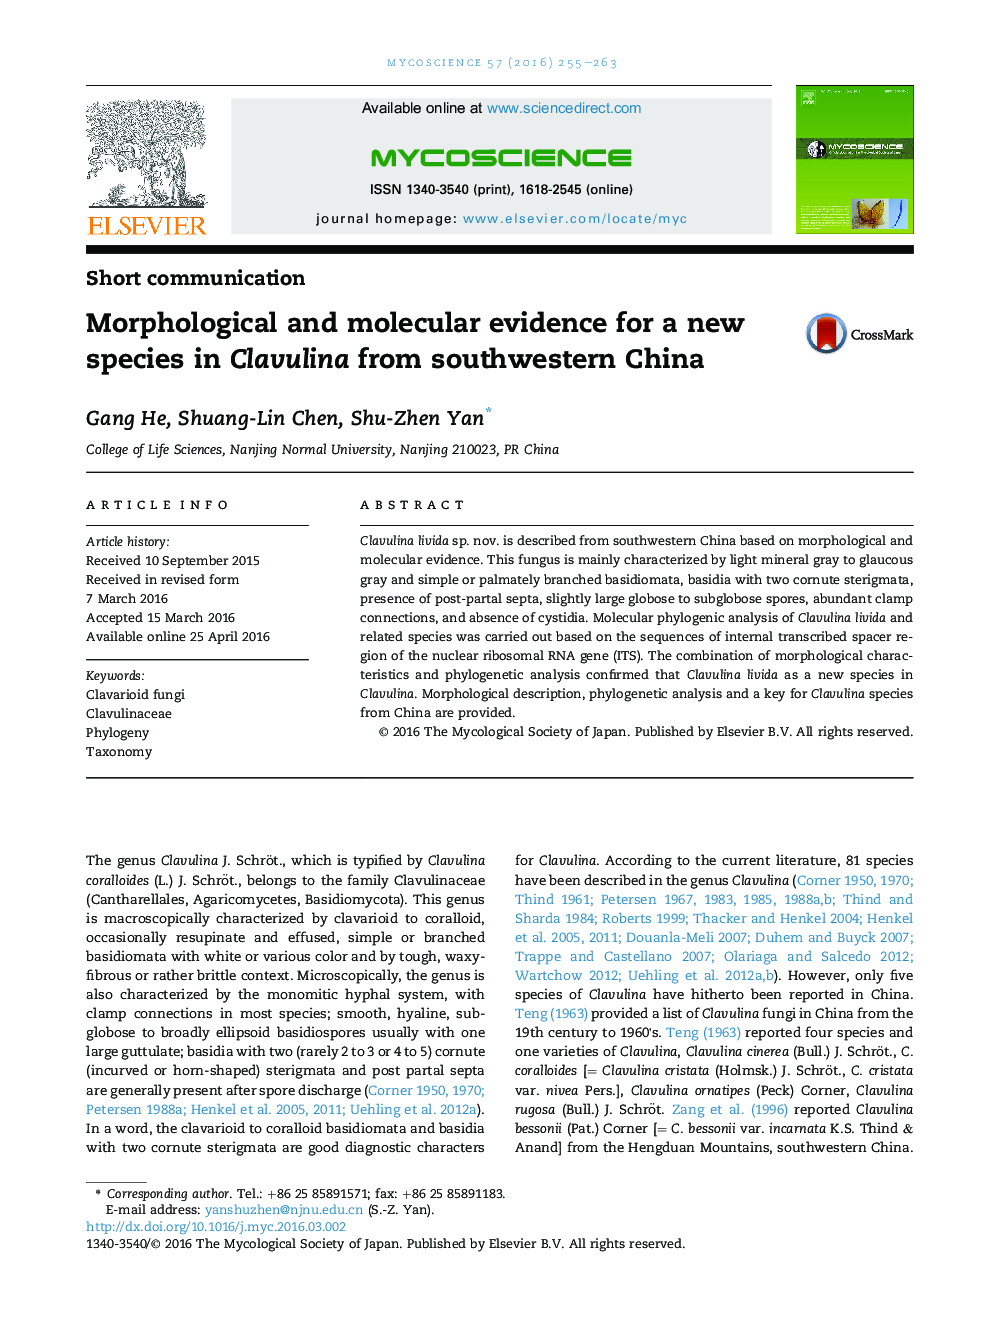 شواهد مورفولوژی و مولکولی برای یک گونه جدید در کلوولینا از جنوب غربی چین 